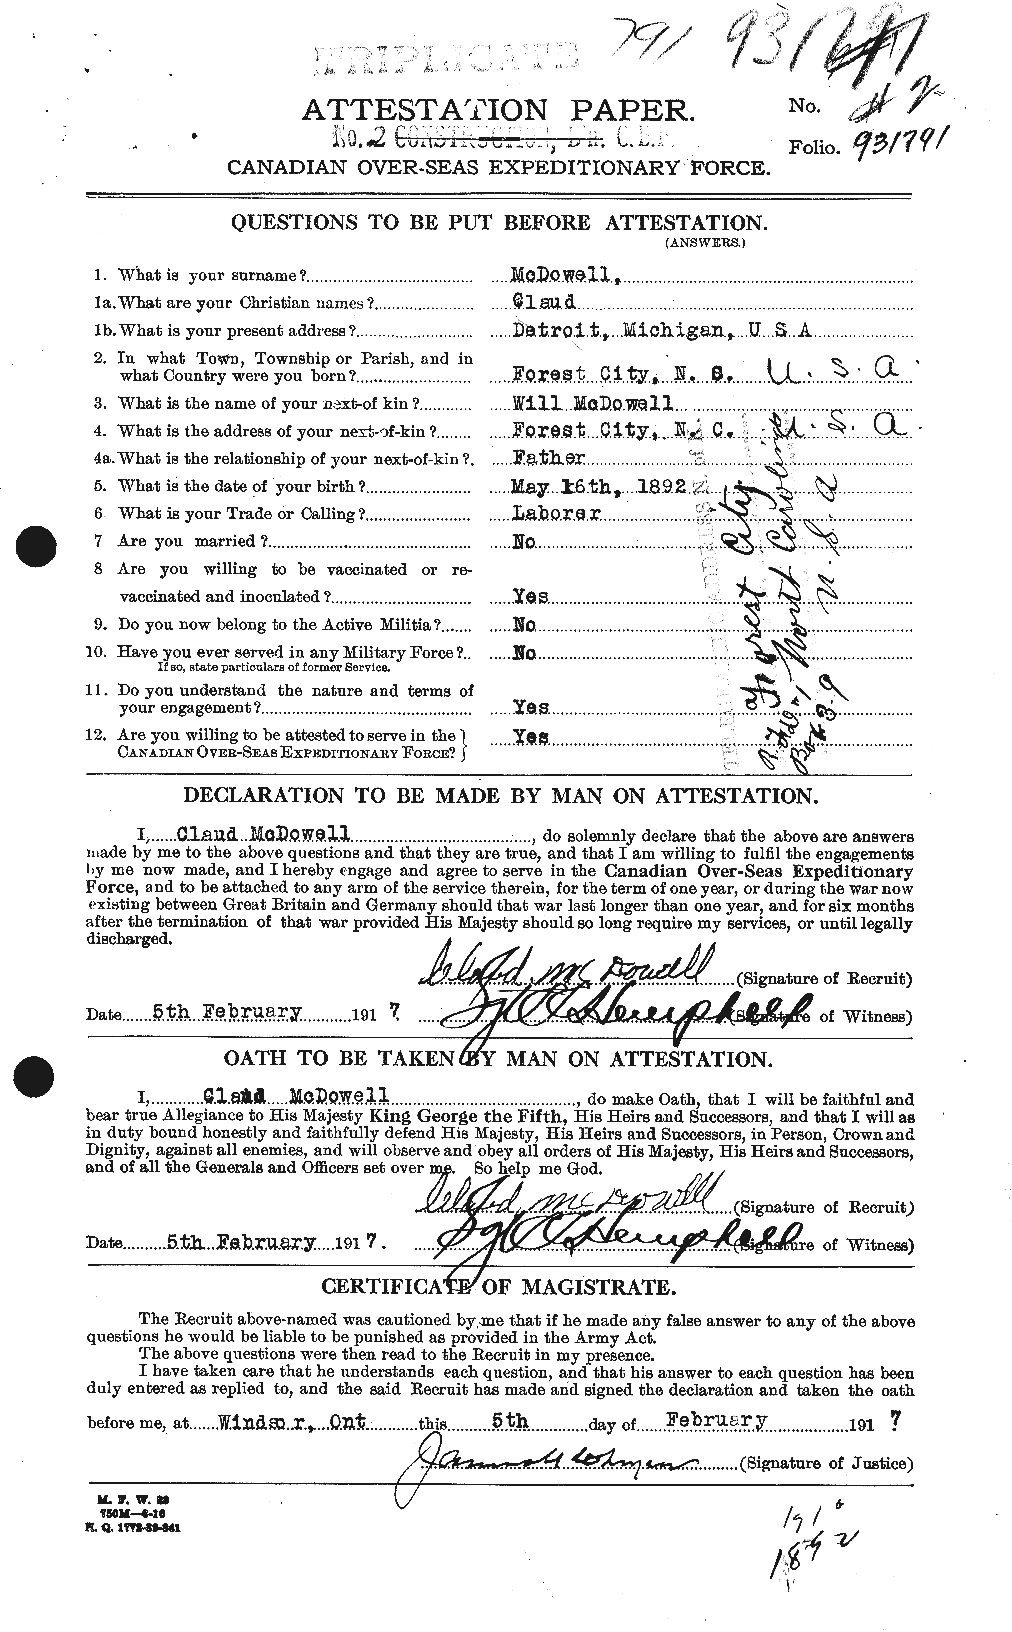 Dossiers du Personnel de la Première Guerre mondiale - CEC 520617a